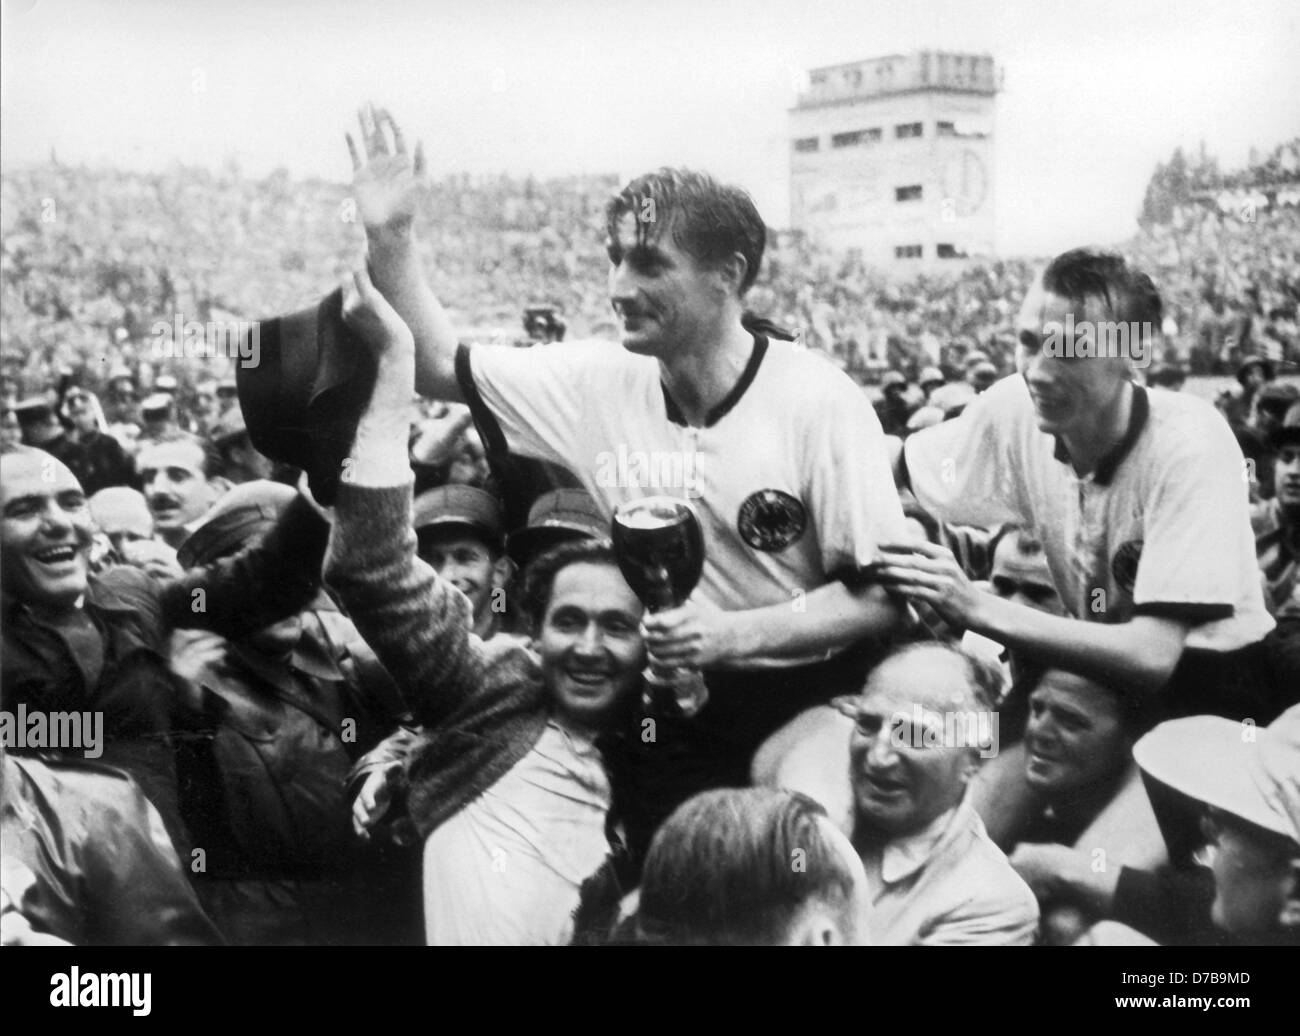 joueur-de-football-allemand-fritz-walter-c-tenant-la-tasse-dans-ses-mains-et-horst-eckel-r-sont-menees-sur-les-epaules-de-leurs-fans-apres-l-equipe-allemande-a-remporte-le-dernier-match-face-a-la-hongrie-lors-de-la-coupe-du-monde-1954-a-berne-en-suisse-le-4-juillet-en-1954-d7b9md.jpg